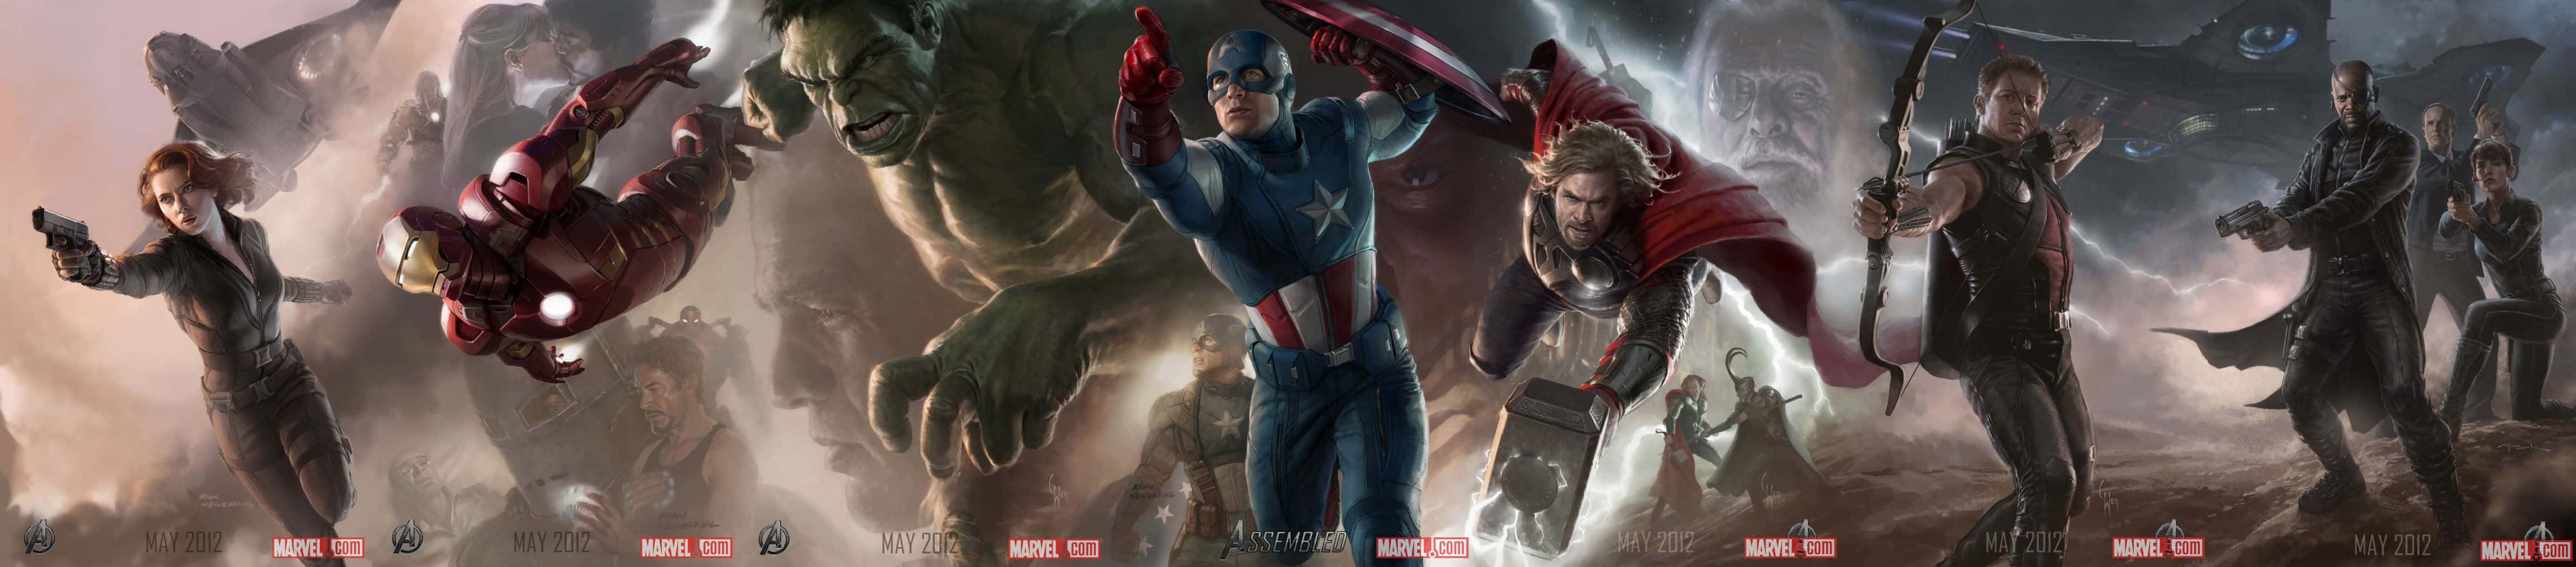 Avengersvärldens Undergång. Wallpaper